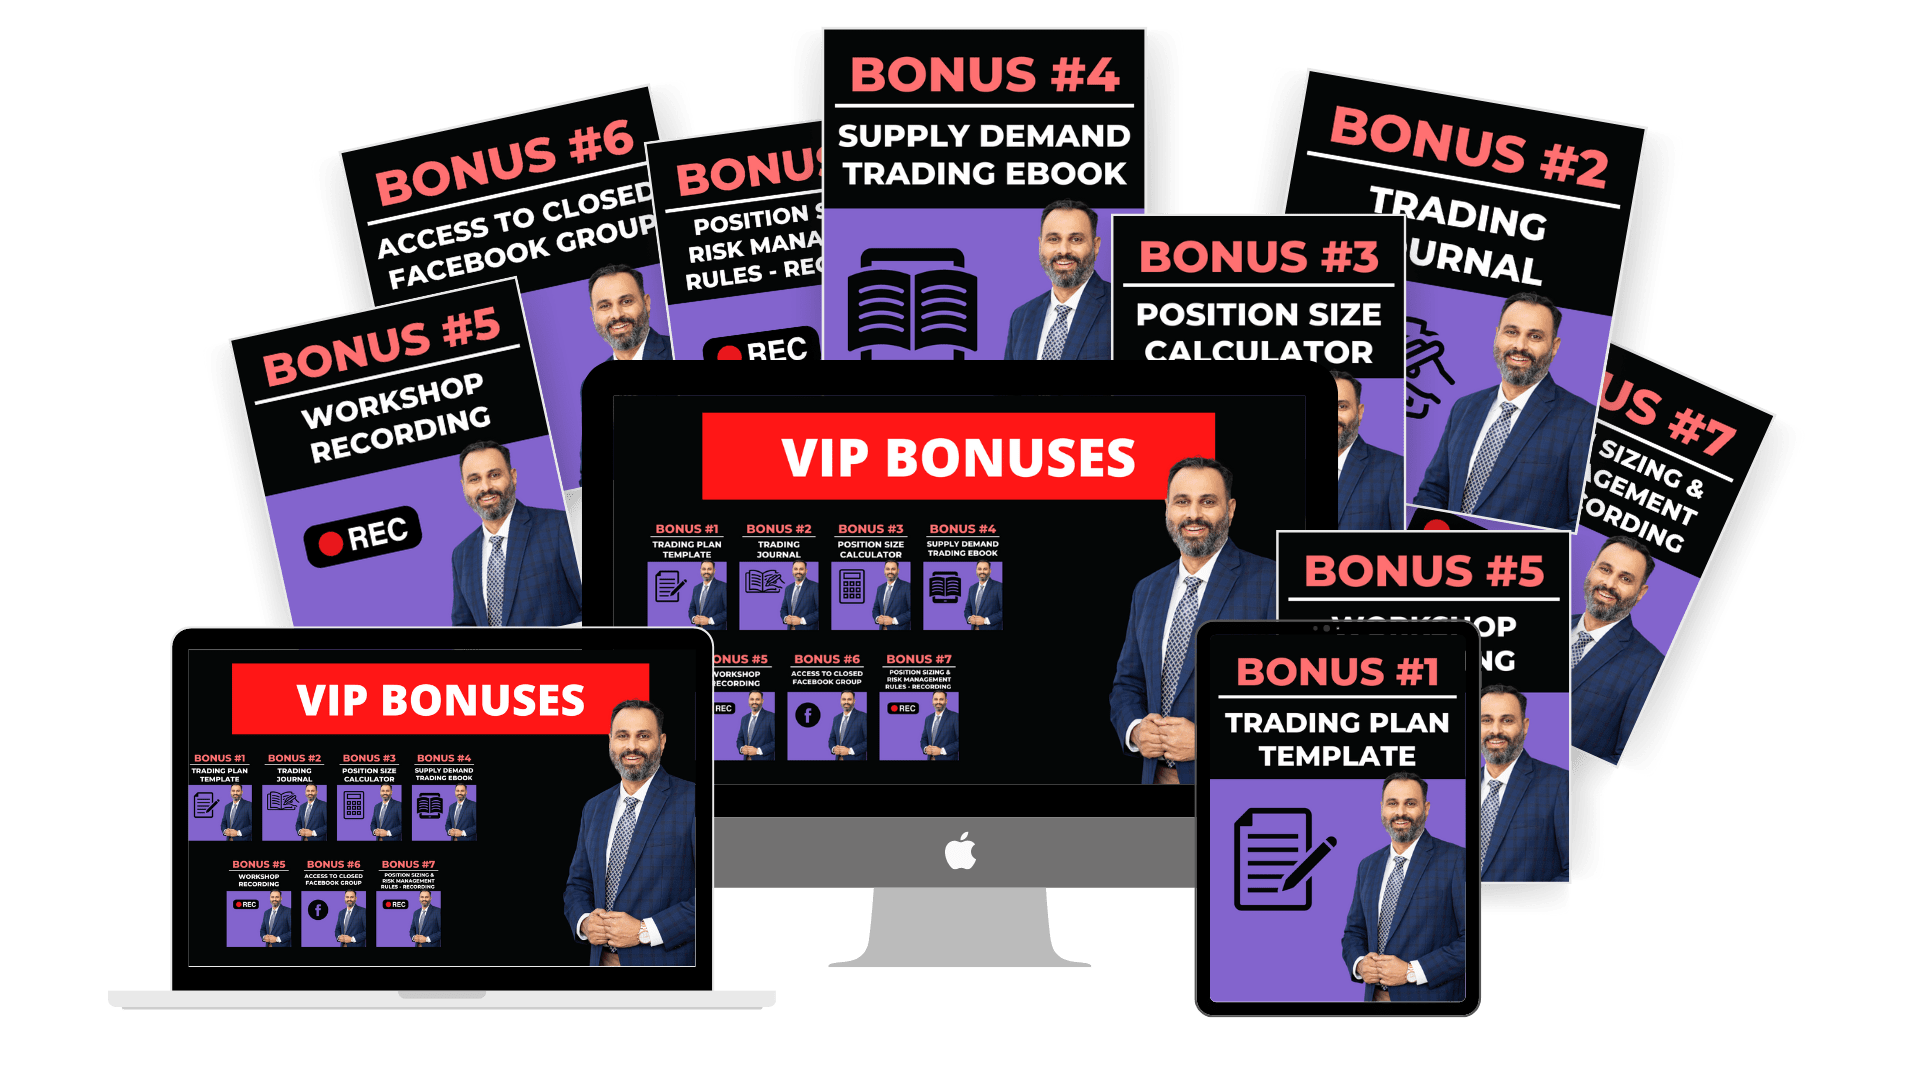 VIP Bonuses